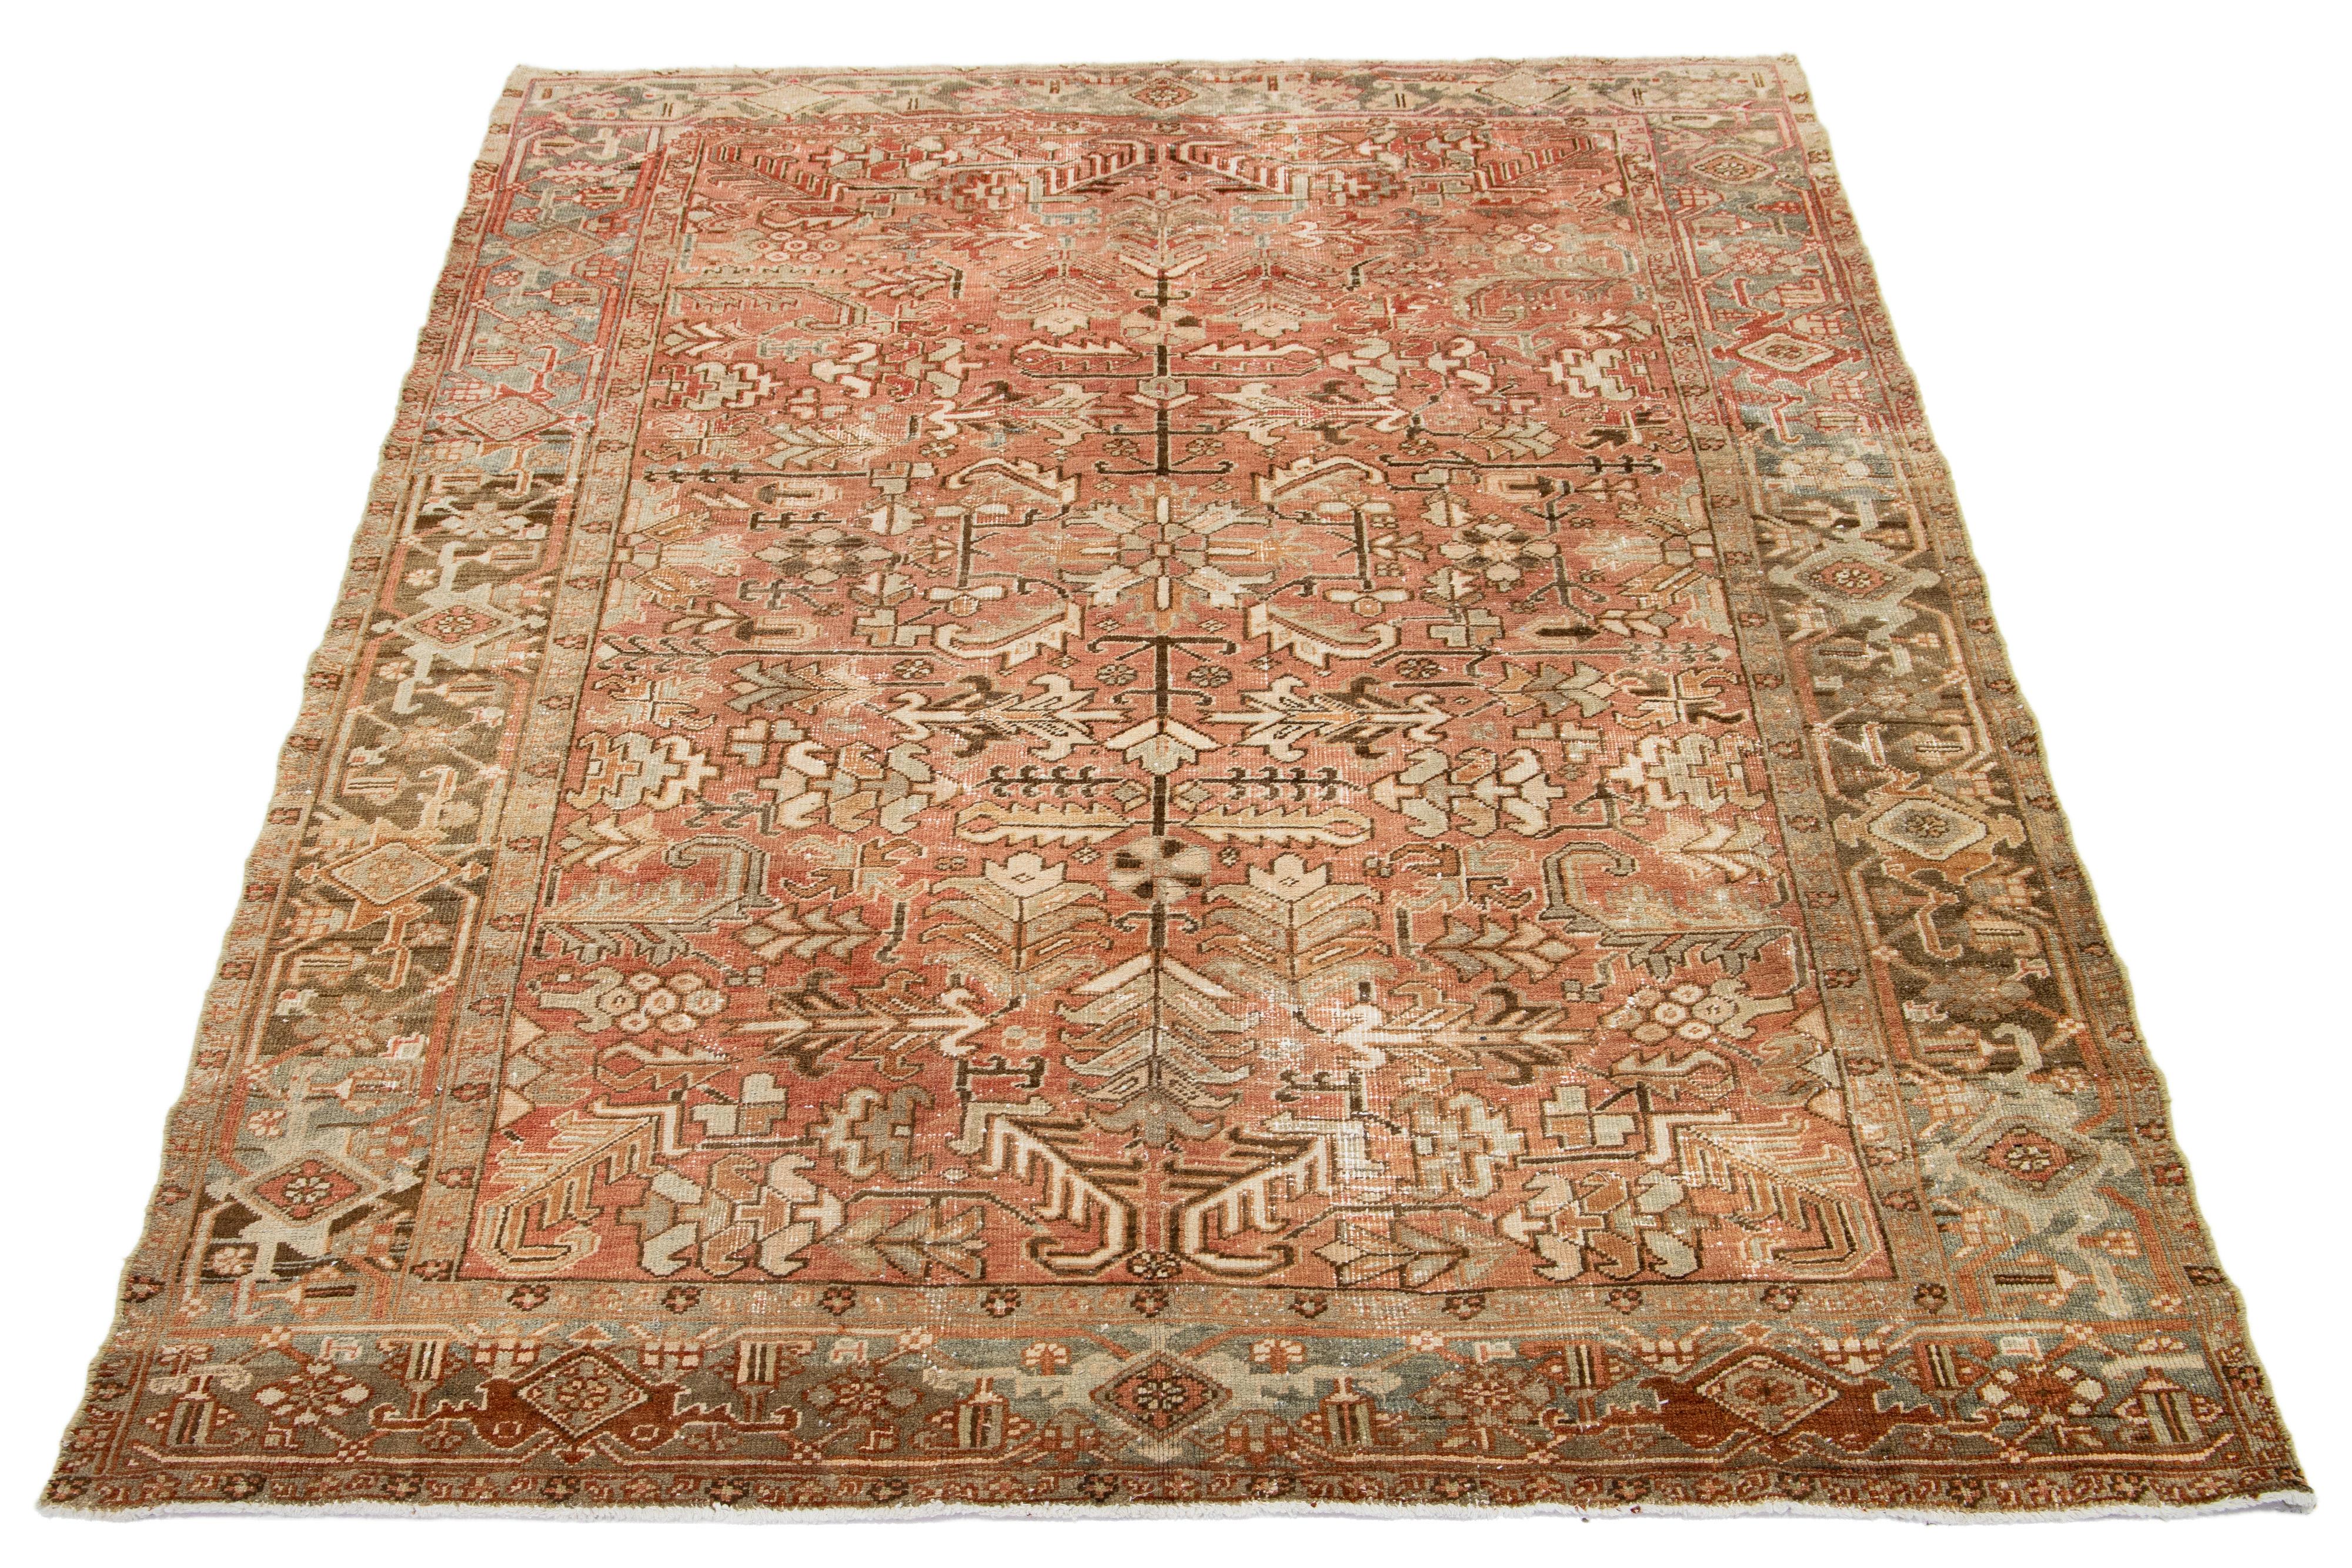 Dieser antike persische Heriz-Teppich zeichnet sich durch ein fesselndes Allover-Muster mit Blau-, Beige- und Brauntönen auf einem pfirsichfarbenen Feld aus. Es wird aus Wolle handgeknüpft.

Dieser Teppich misst 6'9